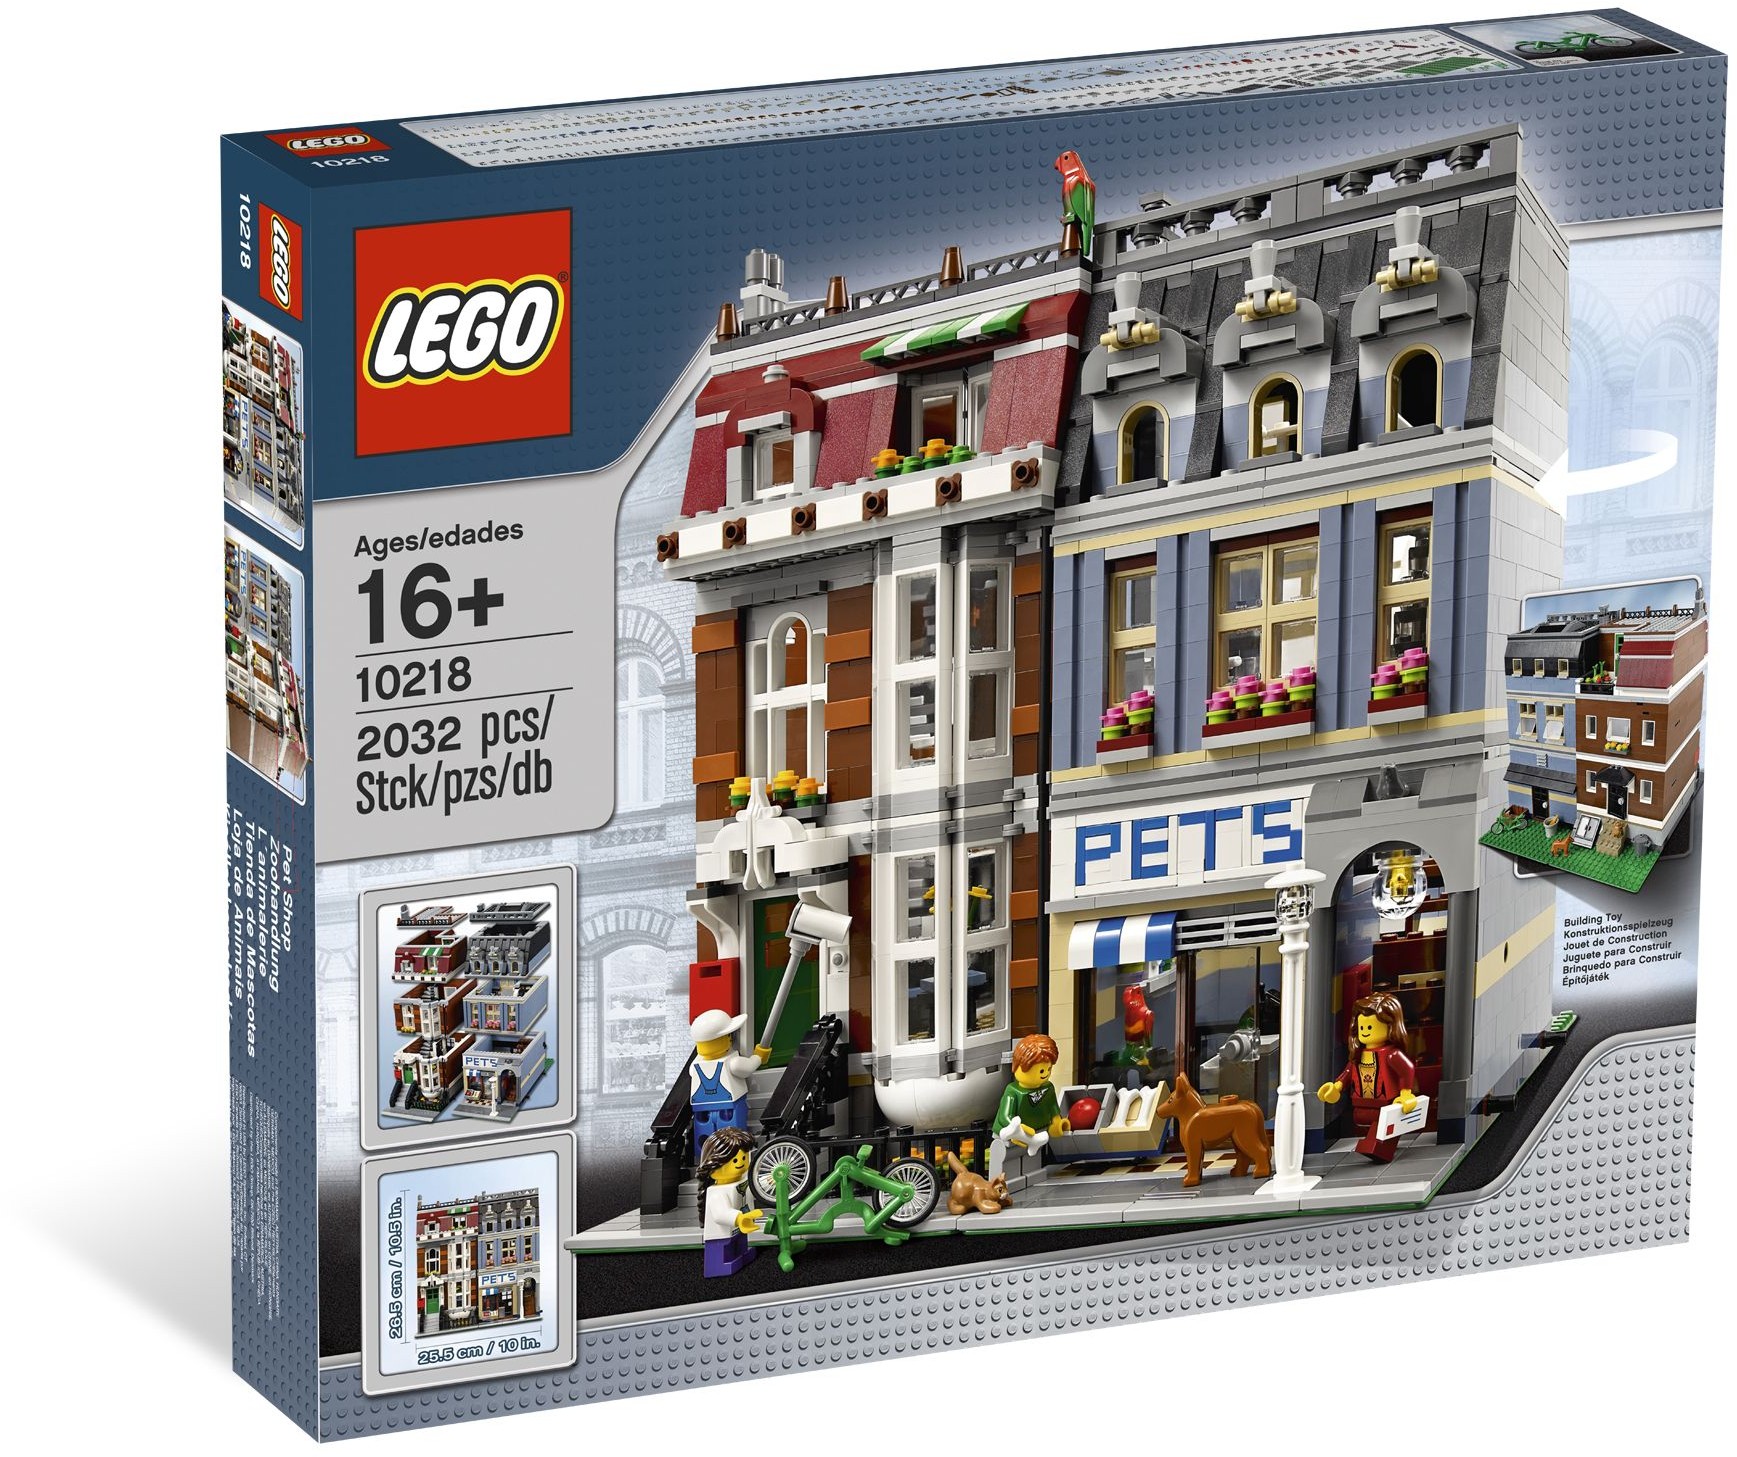 Onafhankelijk Universiteit heb vertrouwen Lego 10218 Pet Shop - Lego Creator set for sale best price